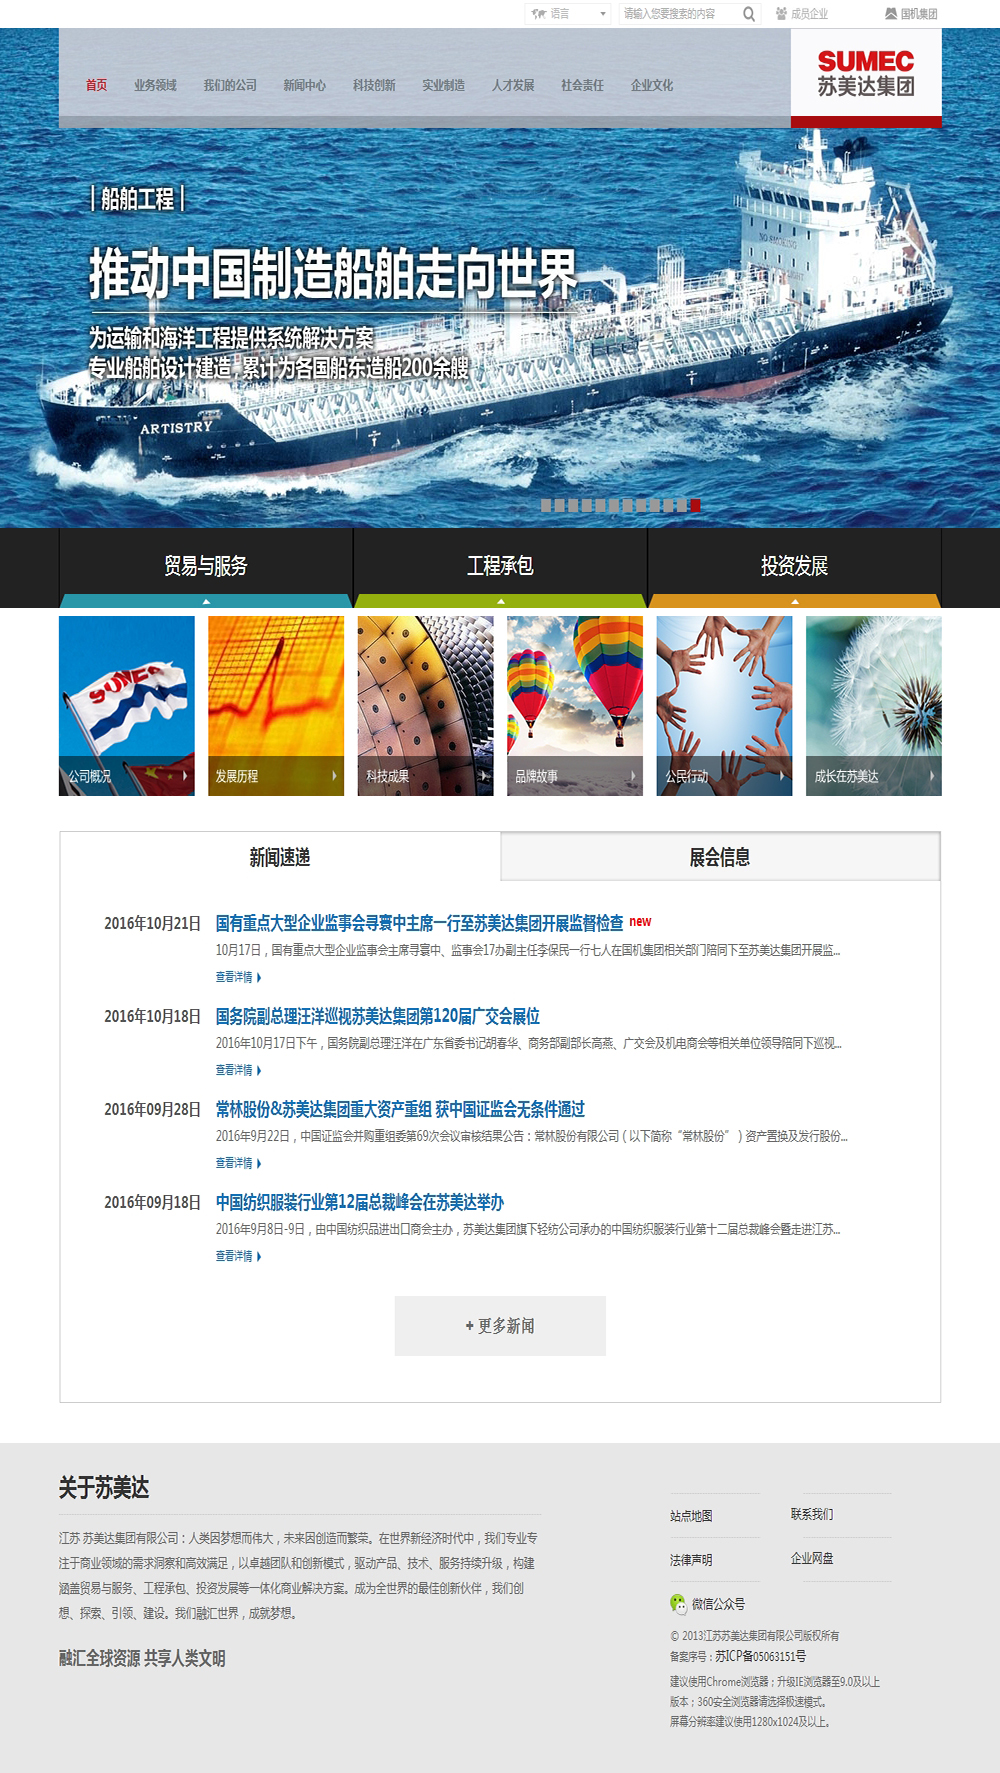 江苏苏美达集团有限公司网站设计案例